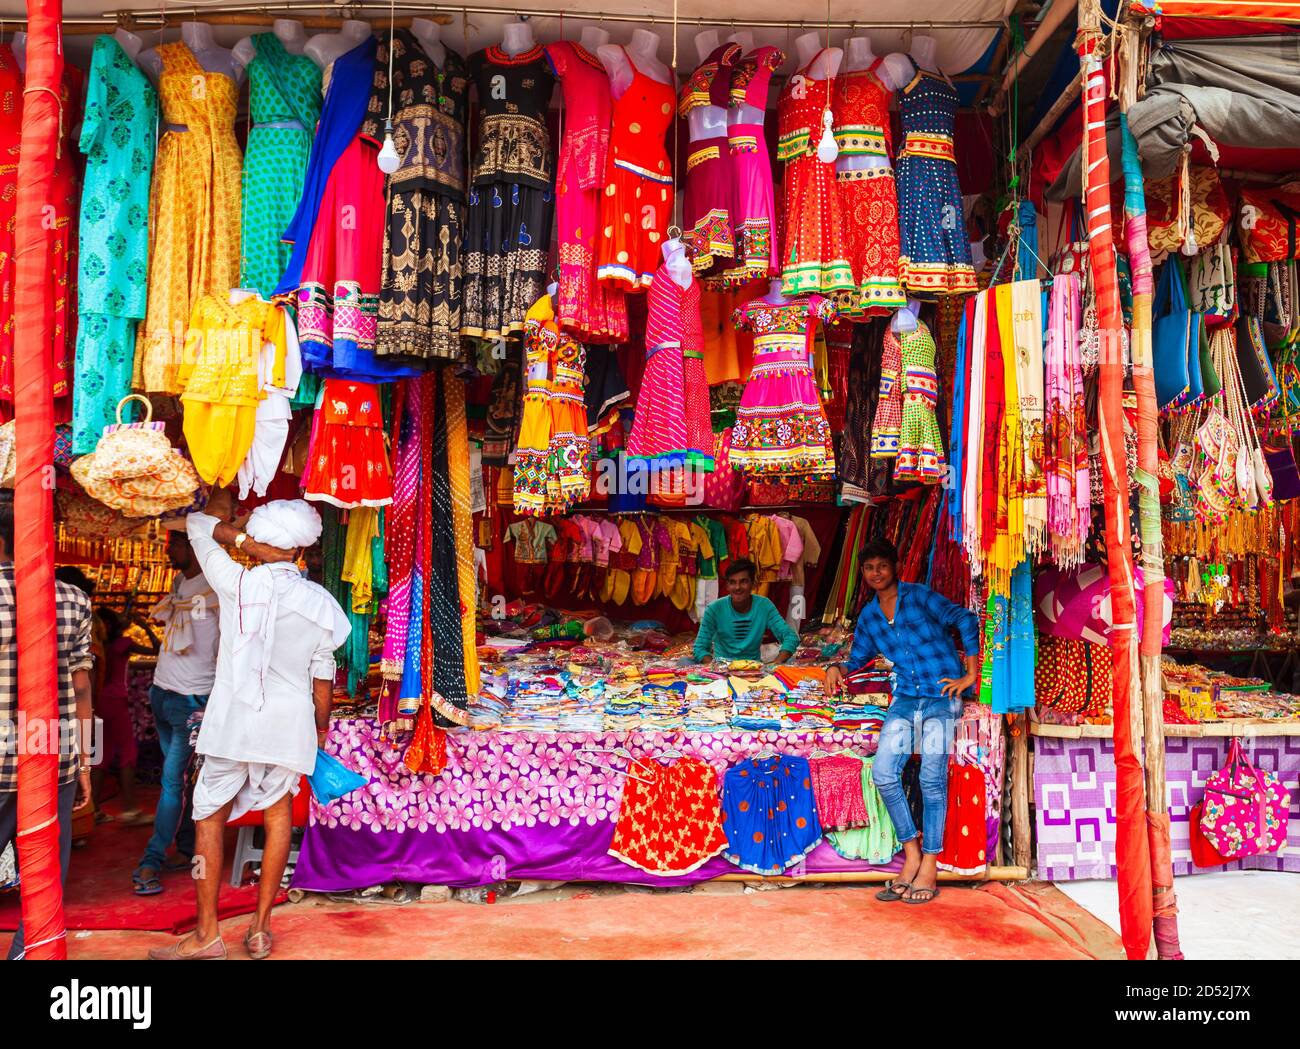 Delhi, INDIEN - 20. SEPTEMBER 2019: Kleines Geschäft mit indianischen bunten Kleidern in Delhi Stockfoto